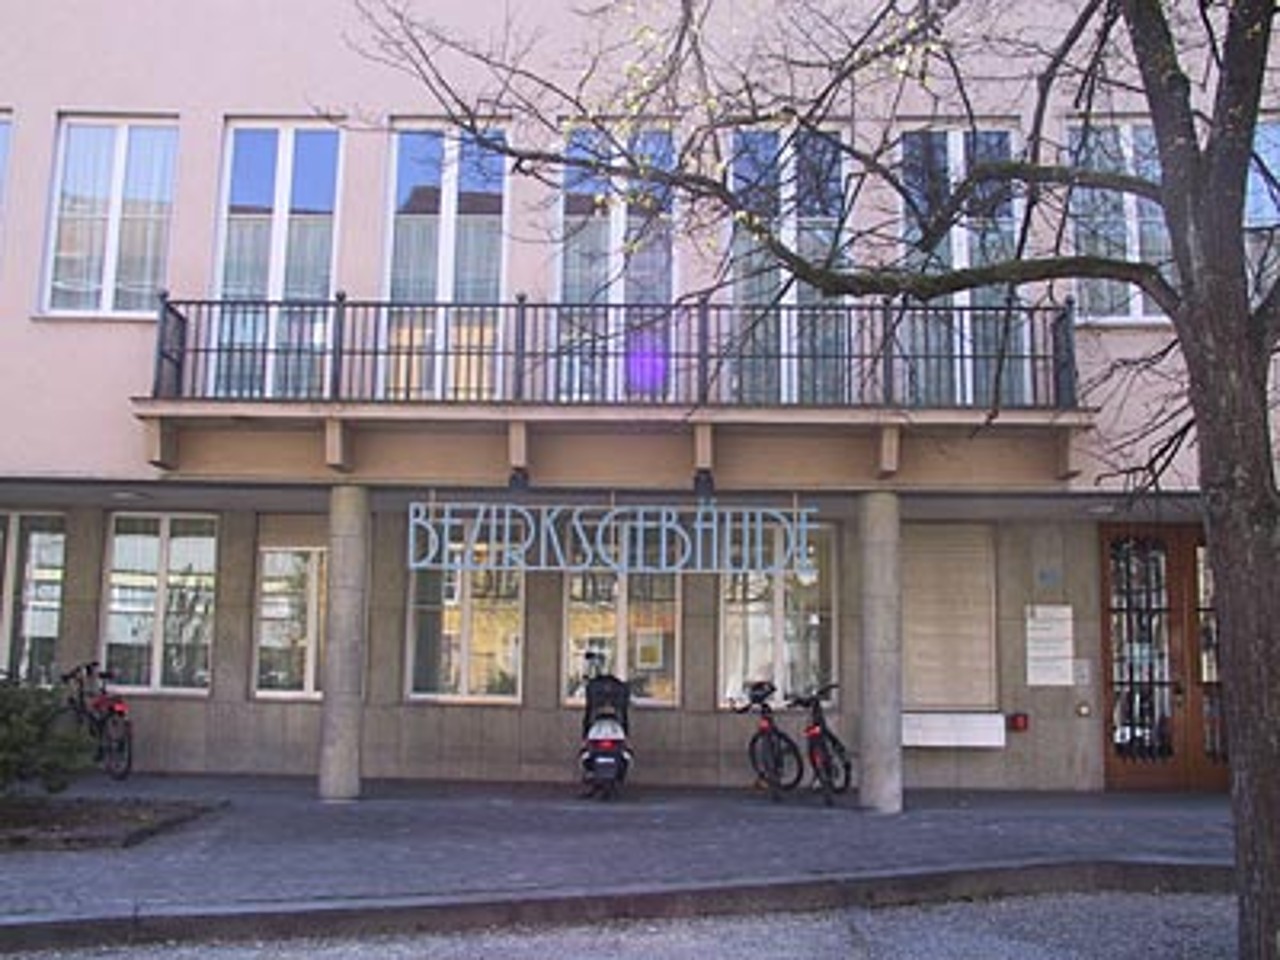 Bezirksgericht Lenzburg von aussen